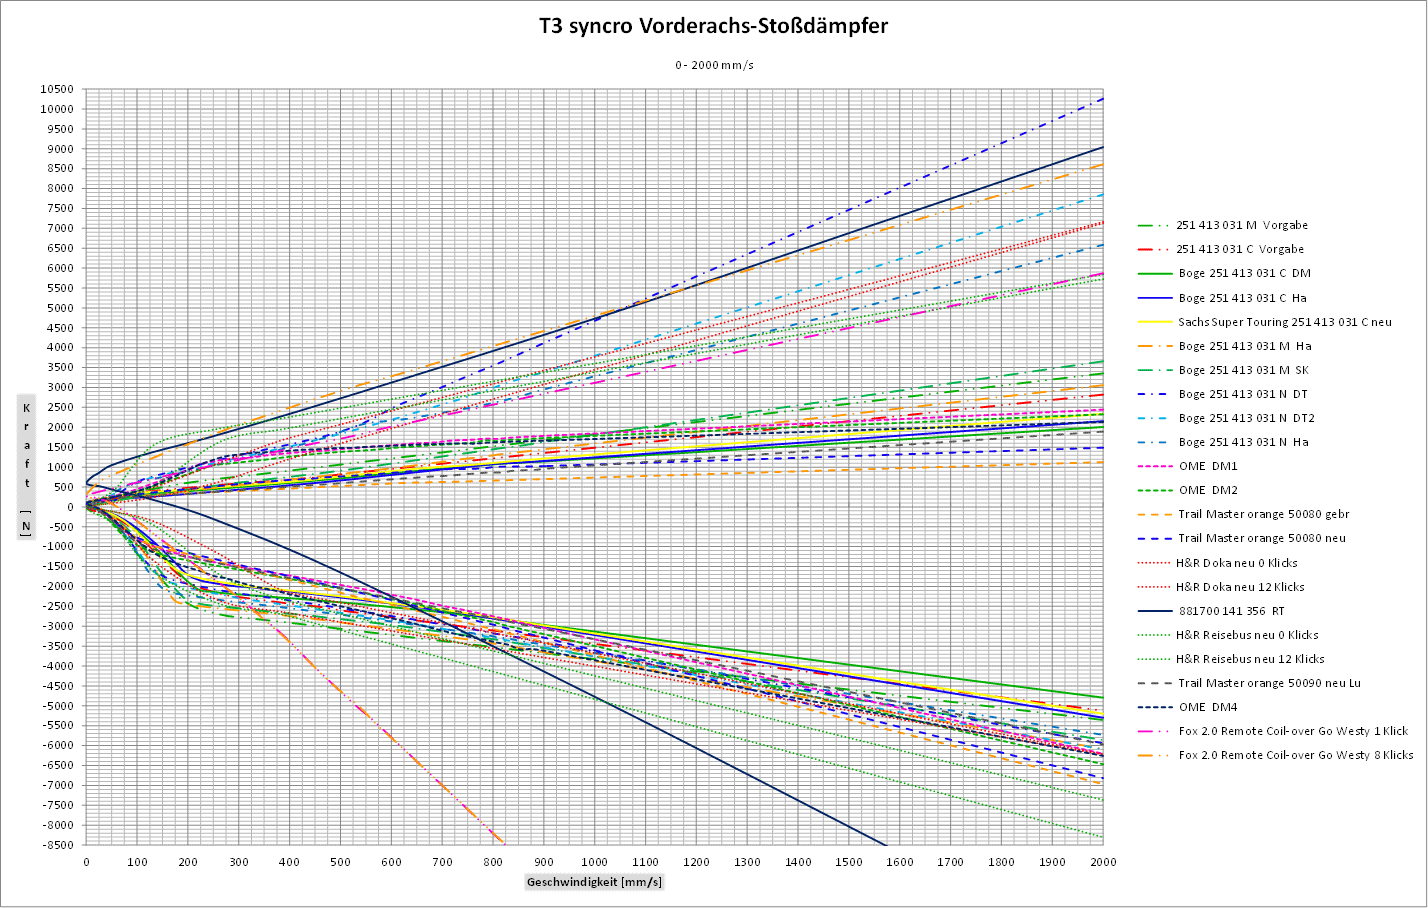 T3 syncro Vorderachs-Stossdaempfer Diagramm 0-2000.gif